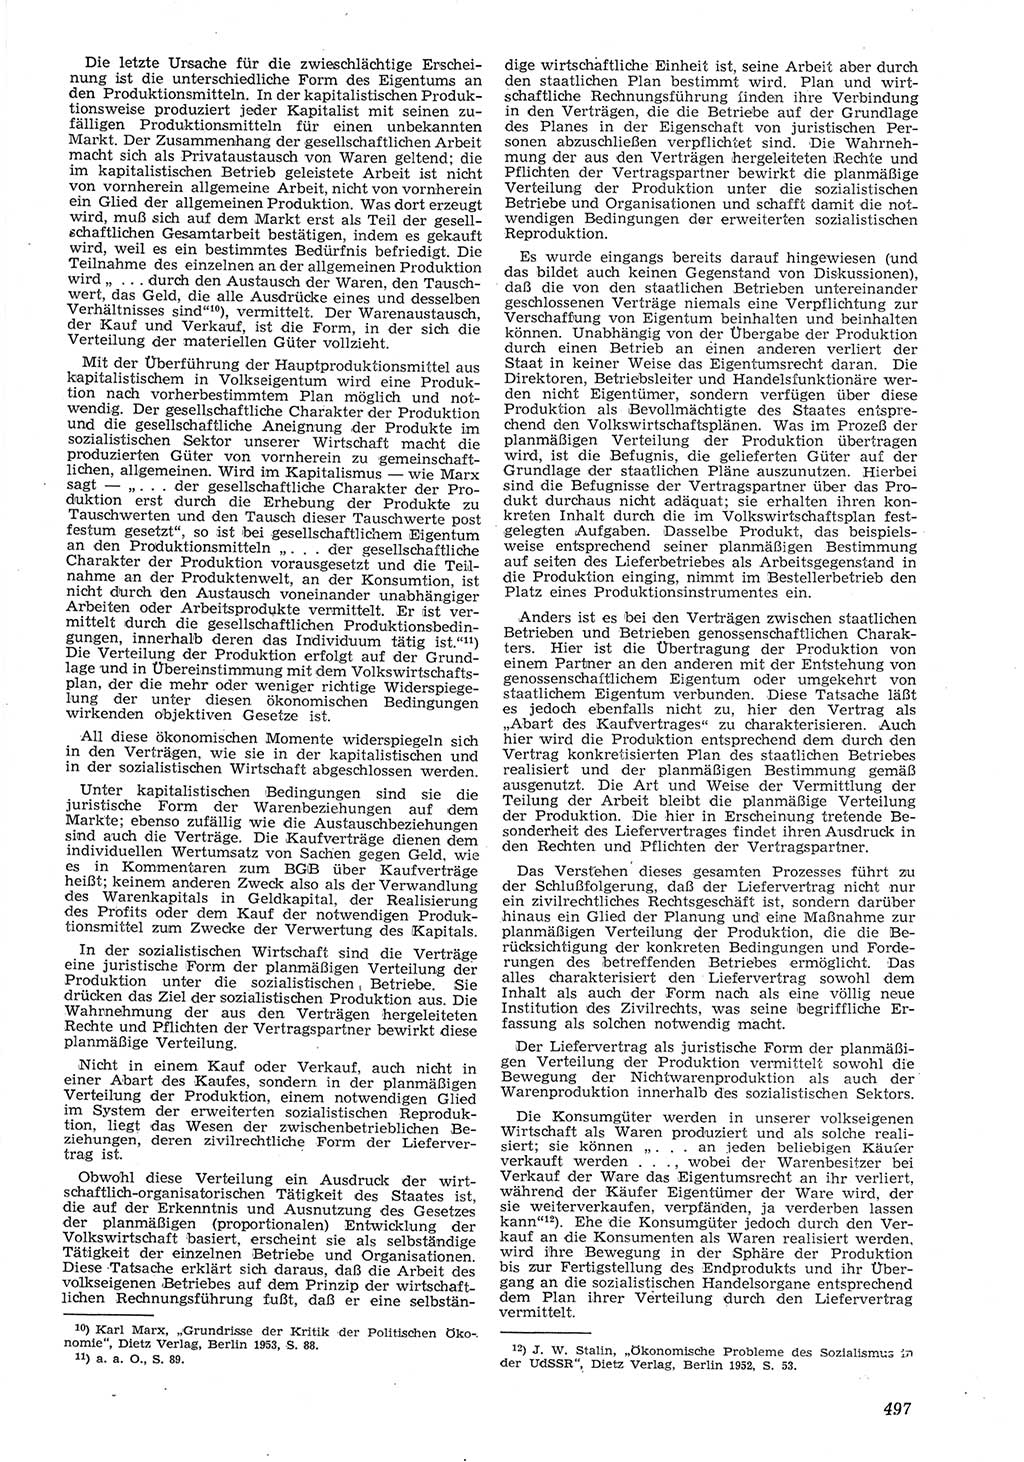 Neue Justiz (NJ), Zeitschrift für Recht und Rechtswissenschaft [Deutsche Demokratische Republik (DDR)], 8. Jahrgang 1954, Seite 497 (NJ DDR 1954, S. 497)